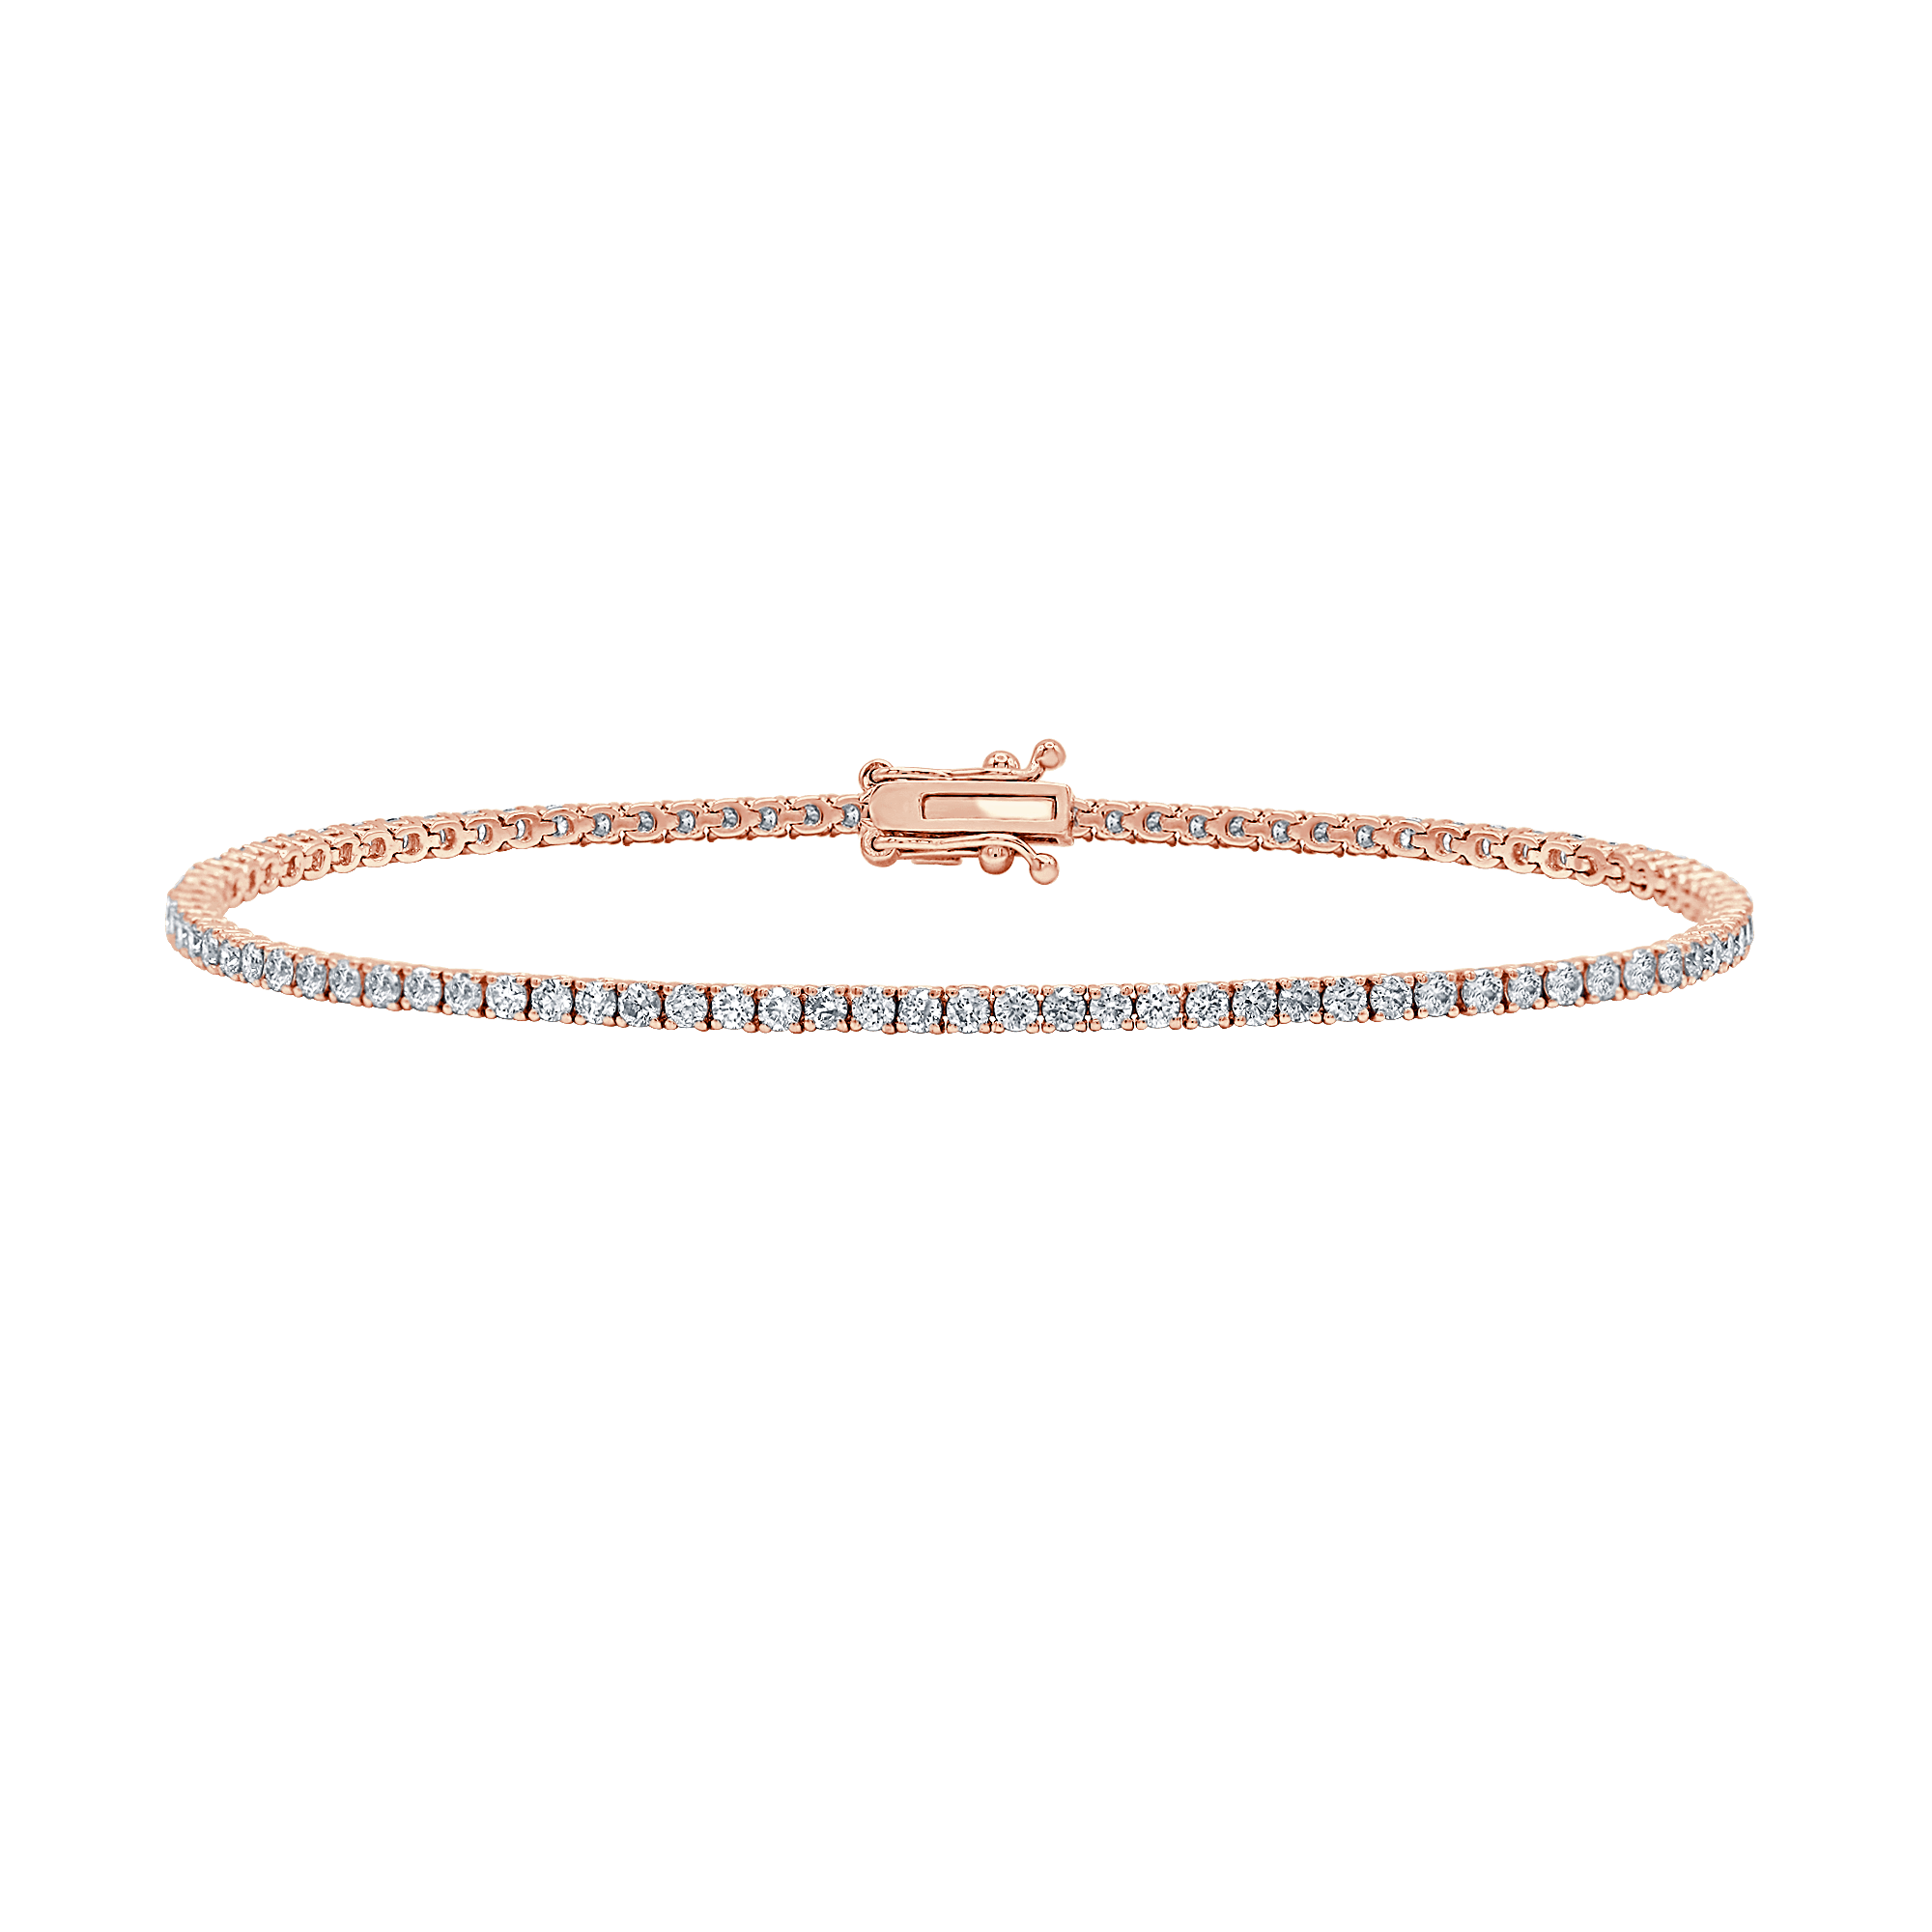 Classic Diamond Tennis Bracelet (2.00 cts)